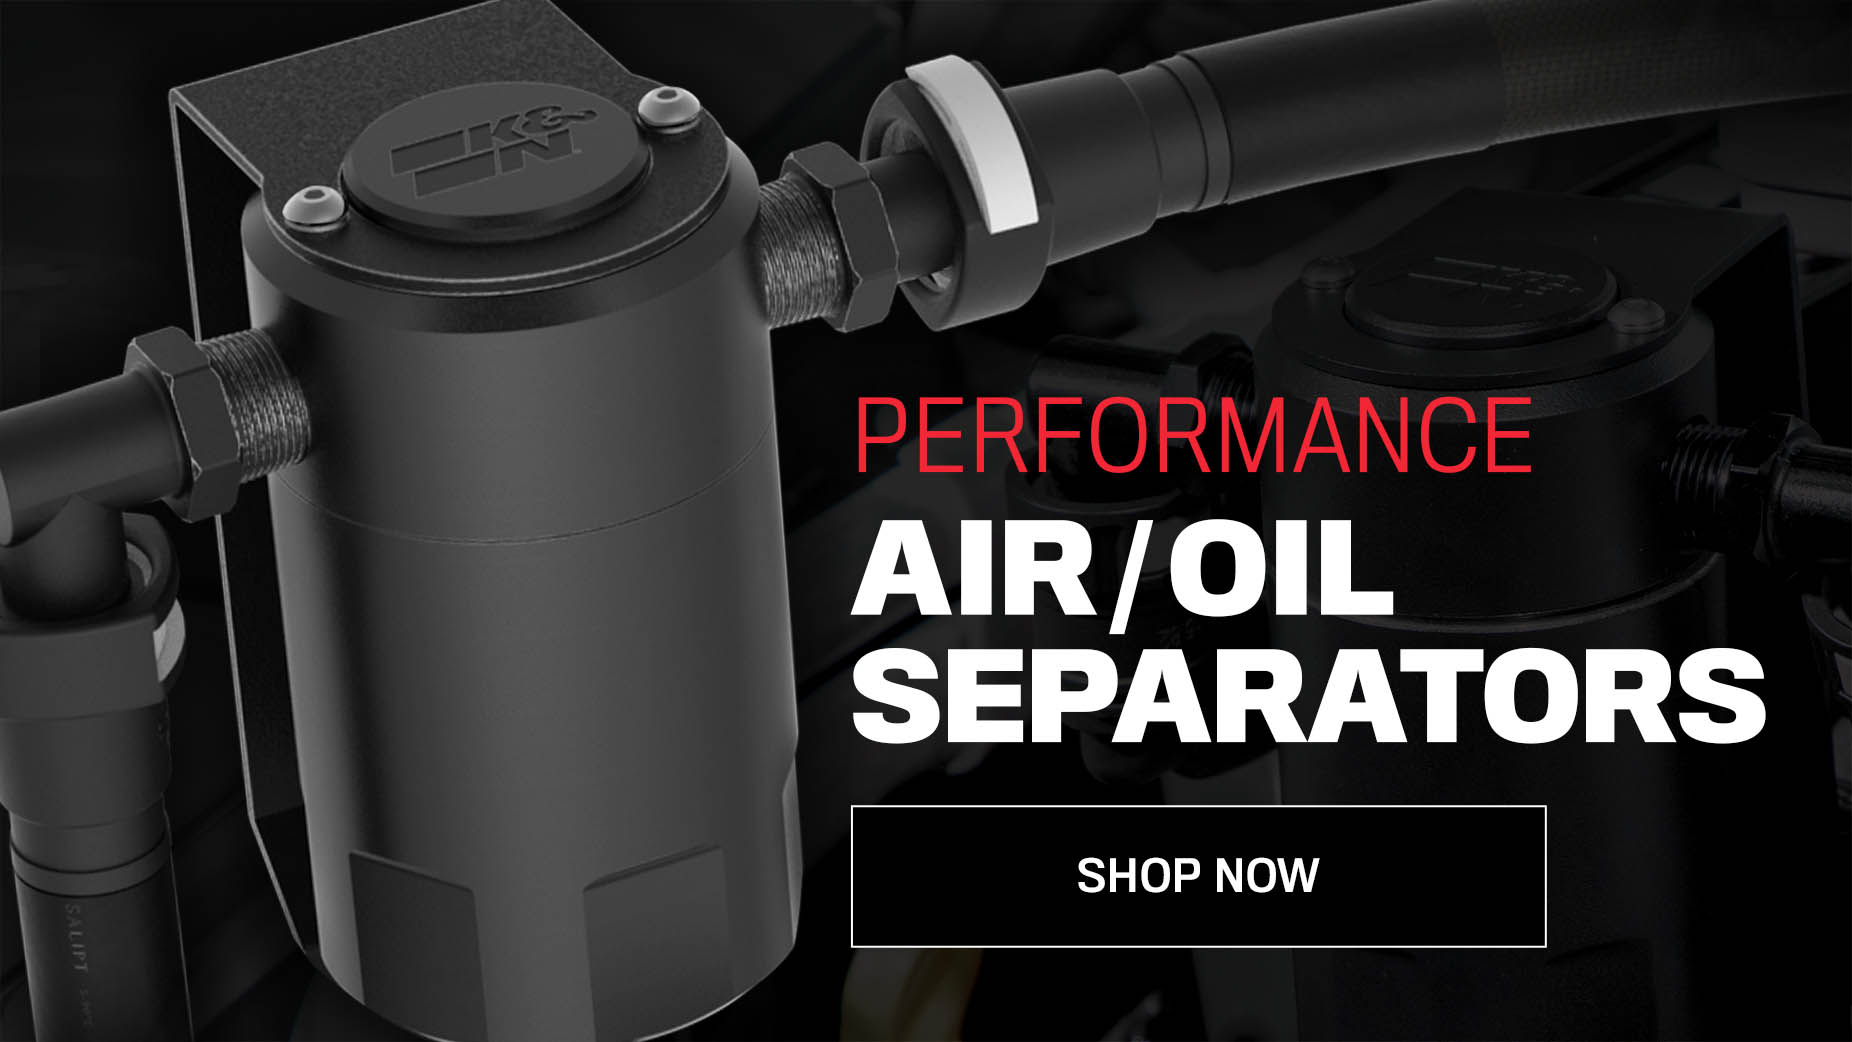 brand new air oil separators